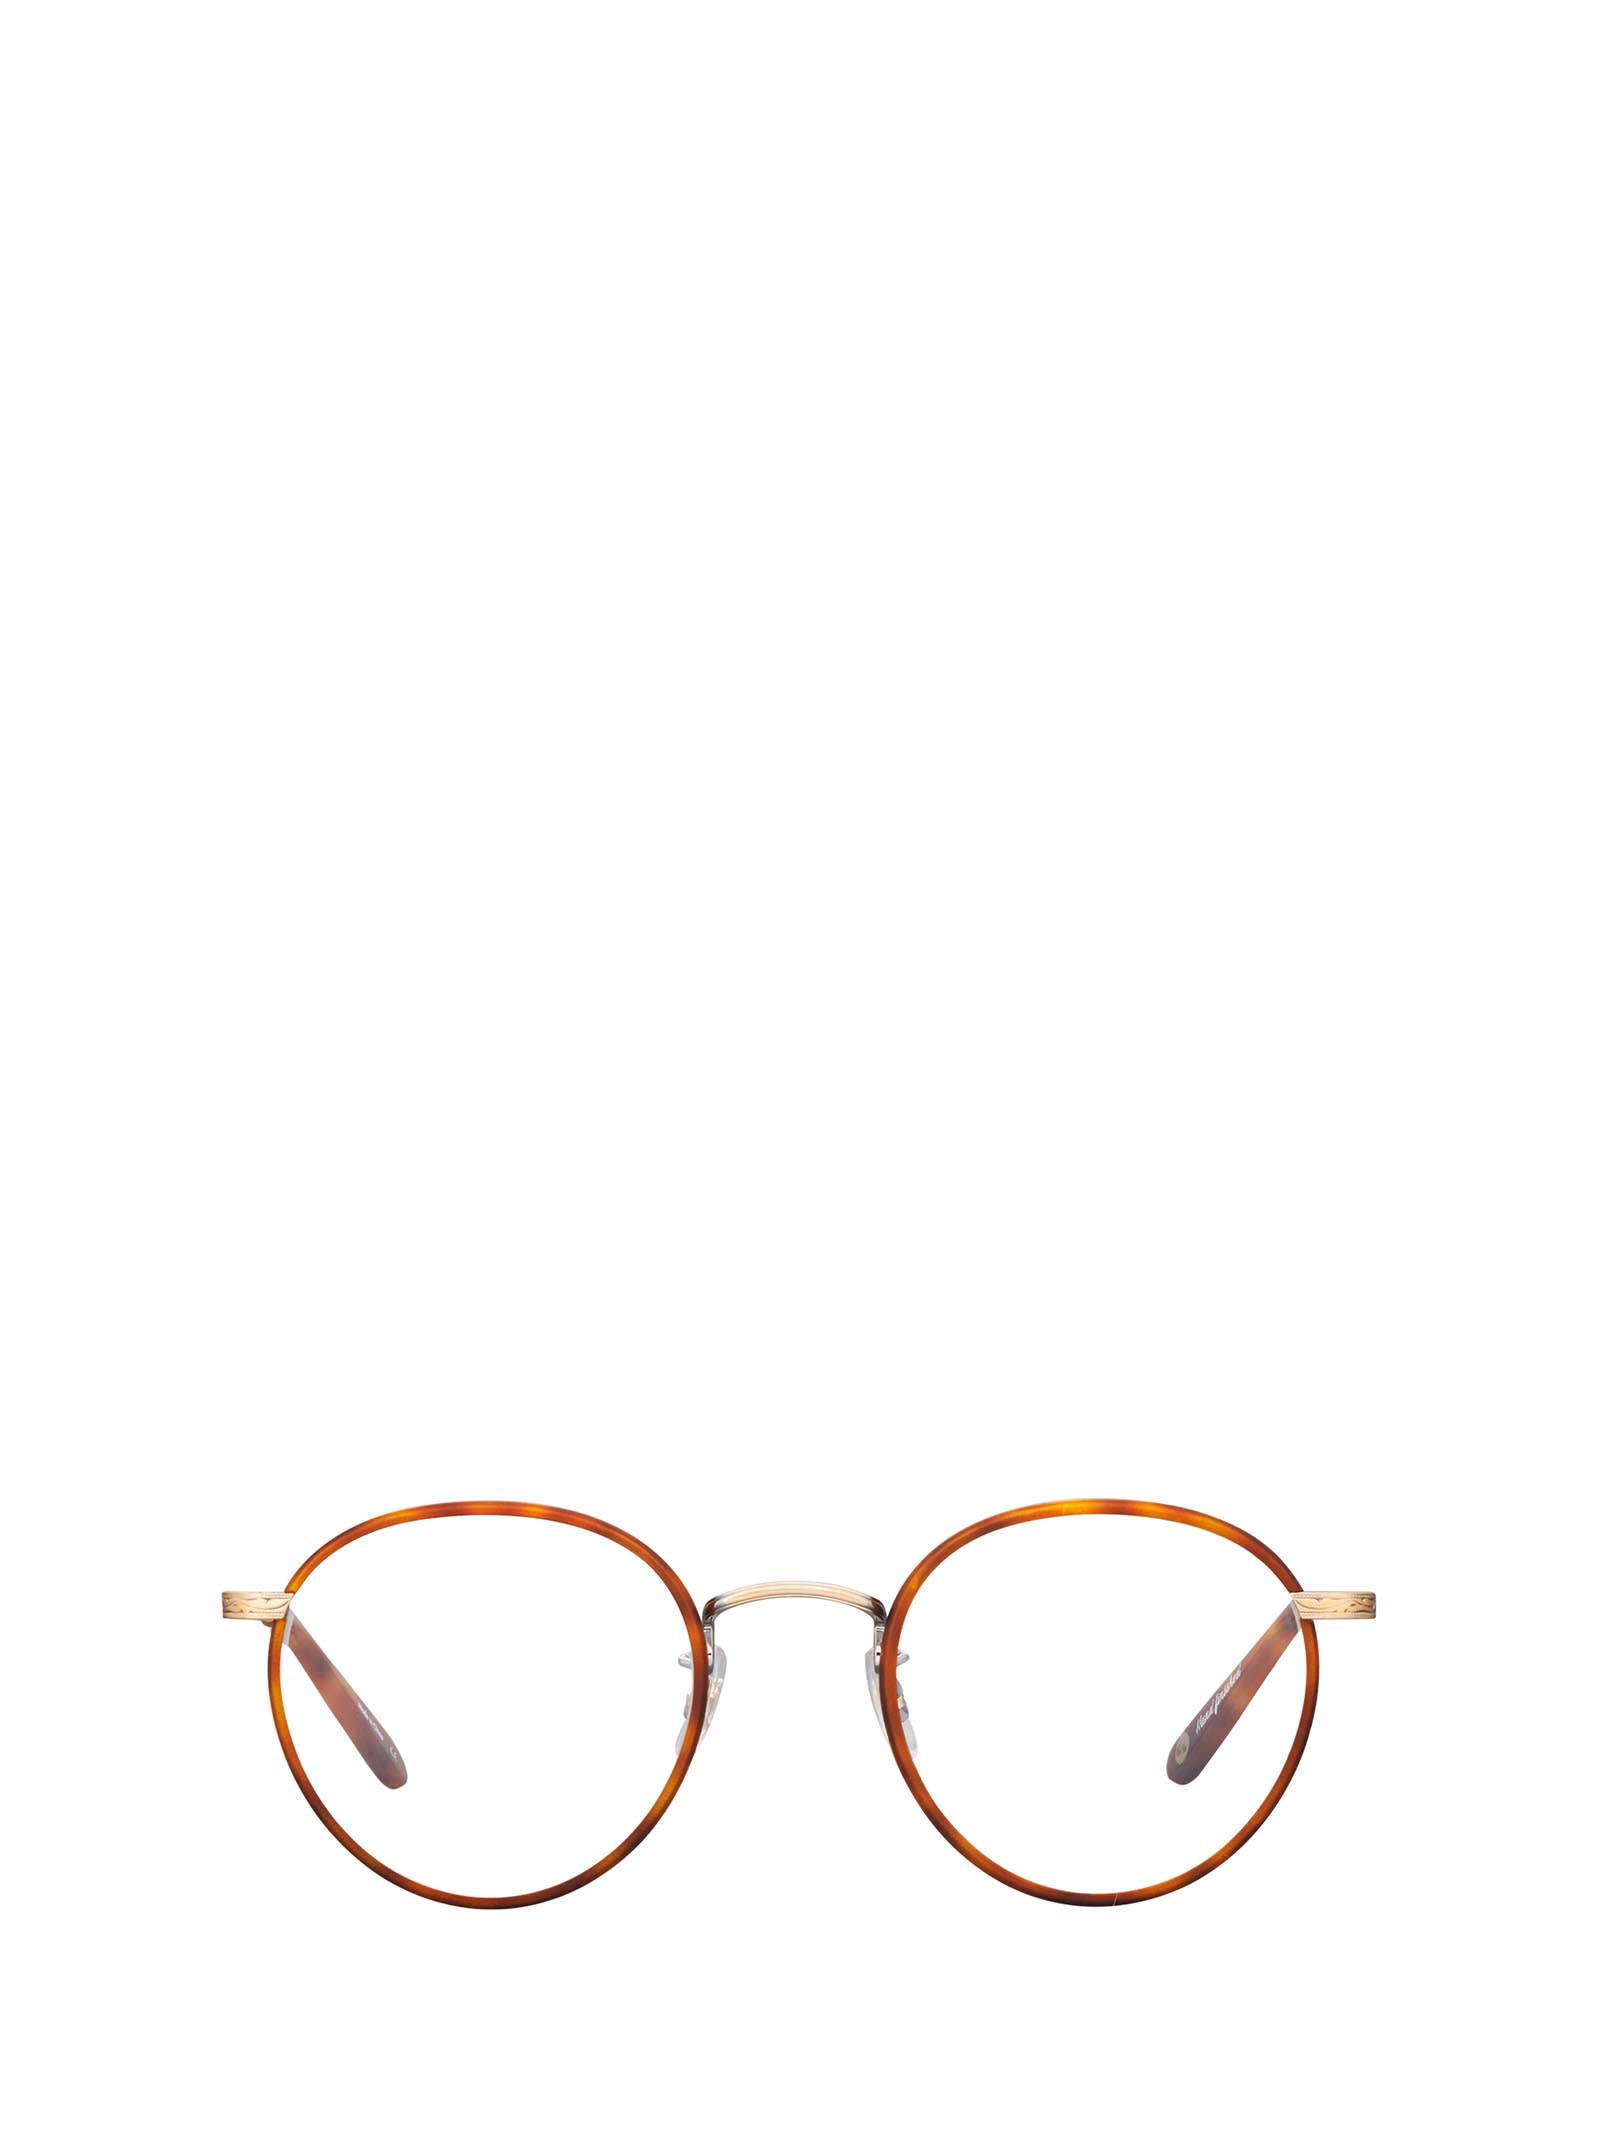 Wilson Butterscotch-tort Glasses